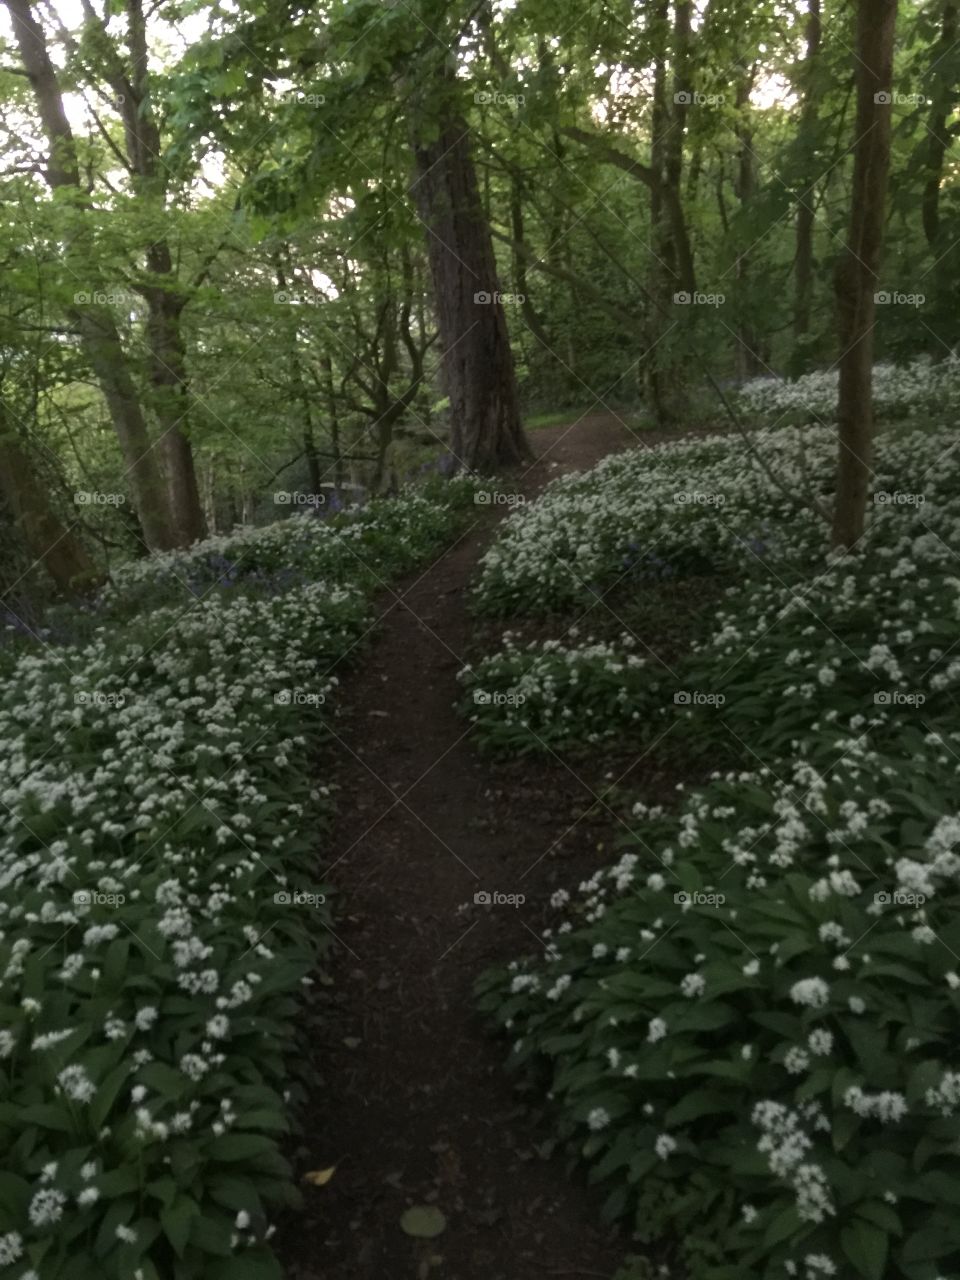 Pathway through the woods wild garlic